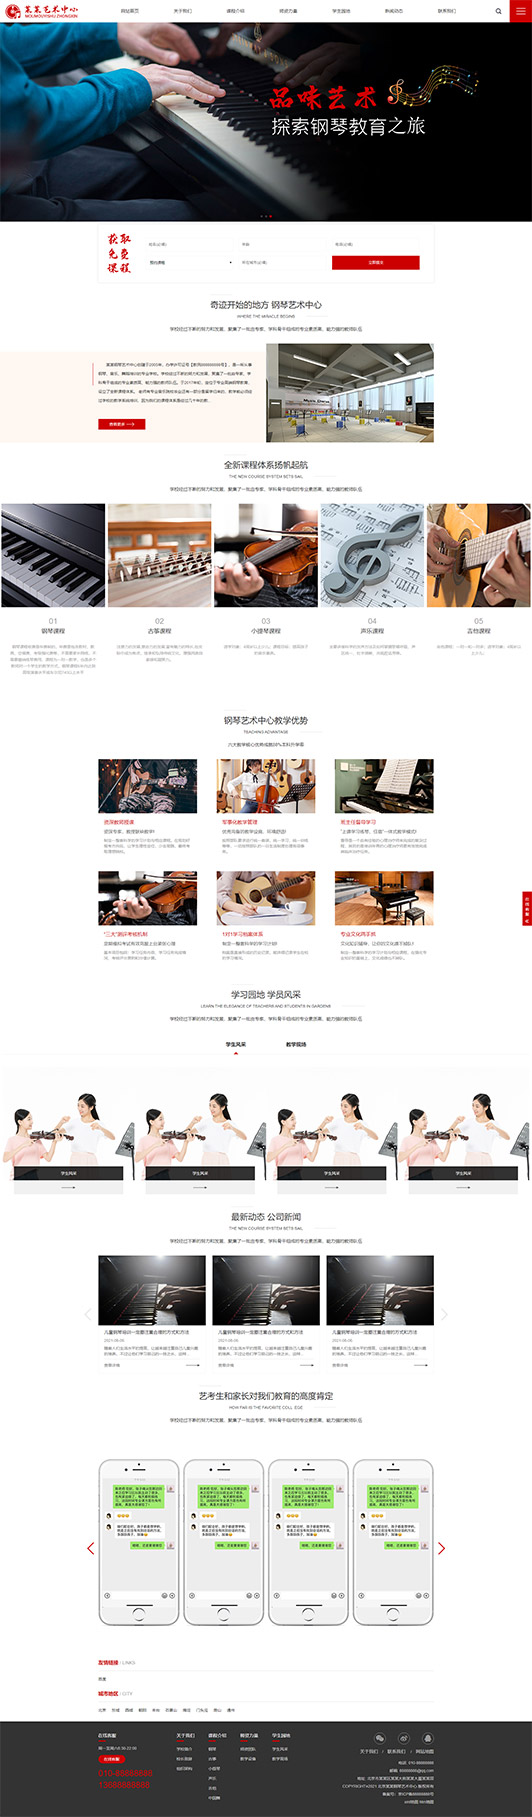 萍乡钢琴艺术培训公司响应式企业网站